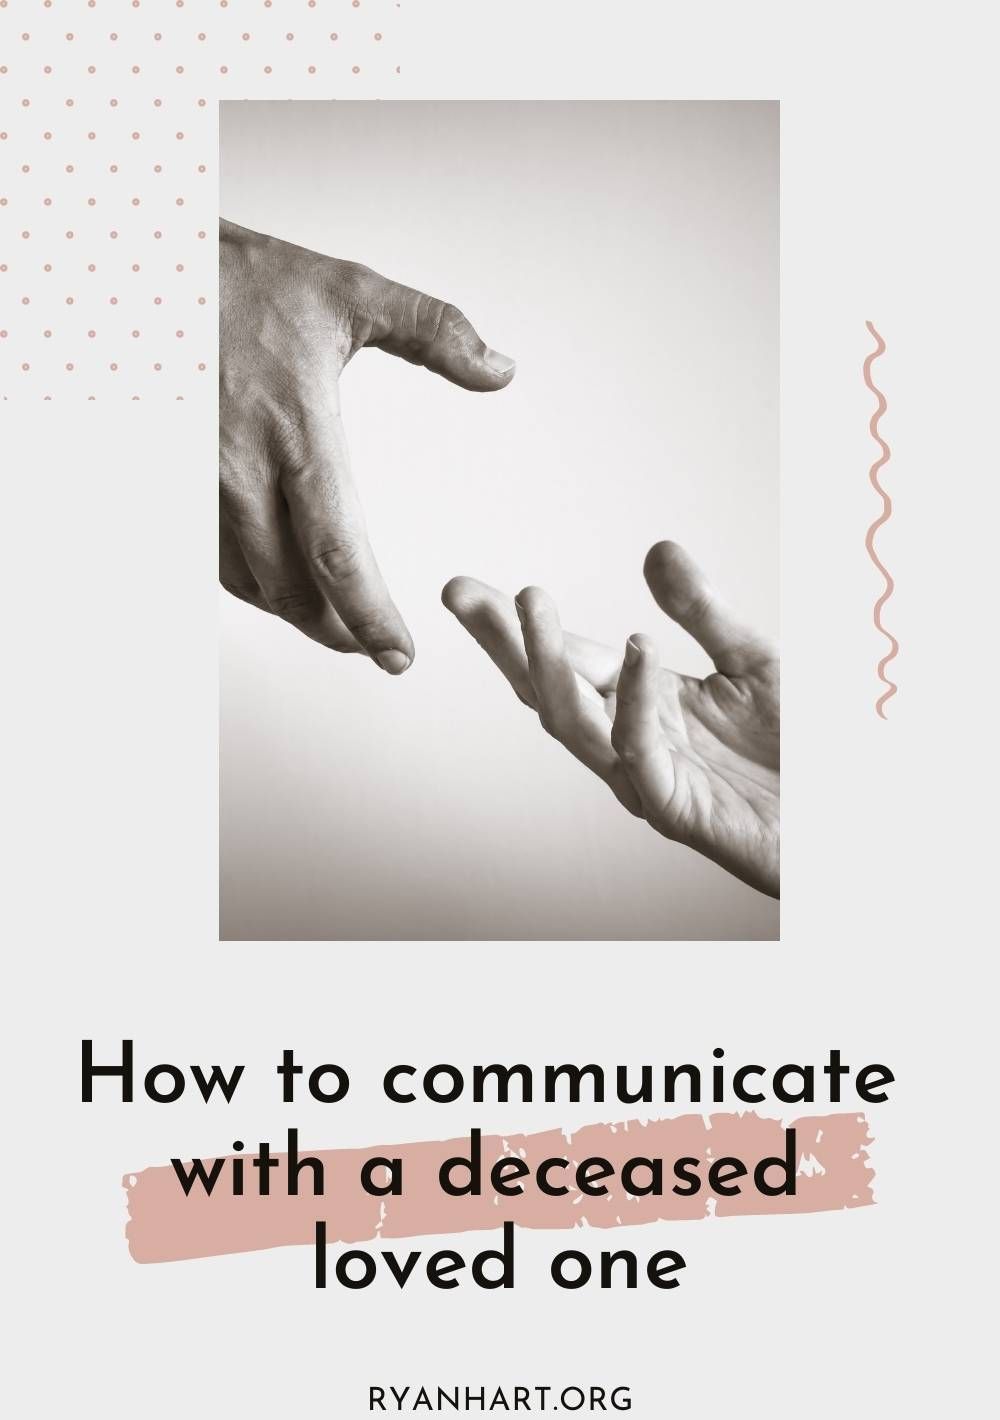 Comment communiquer avec un être cher décédé (ADC)